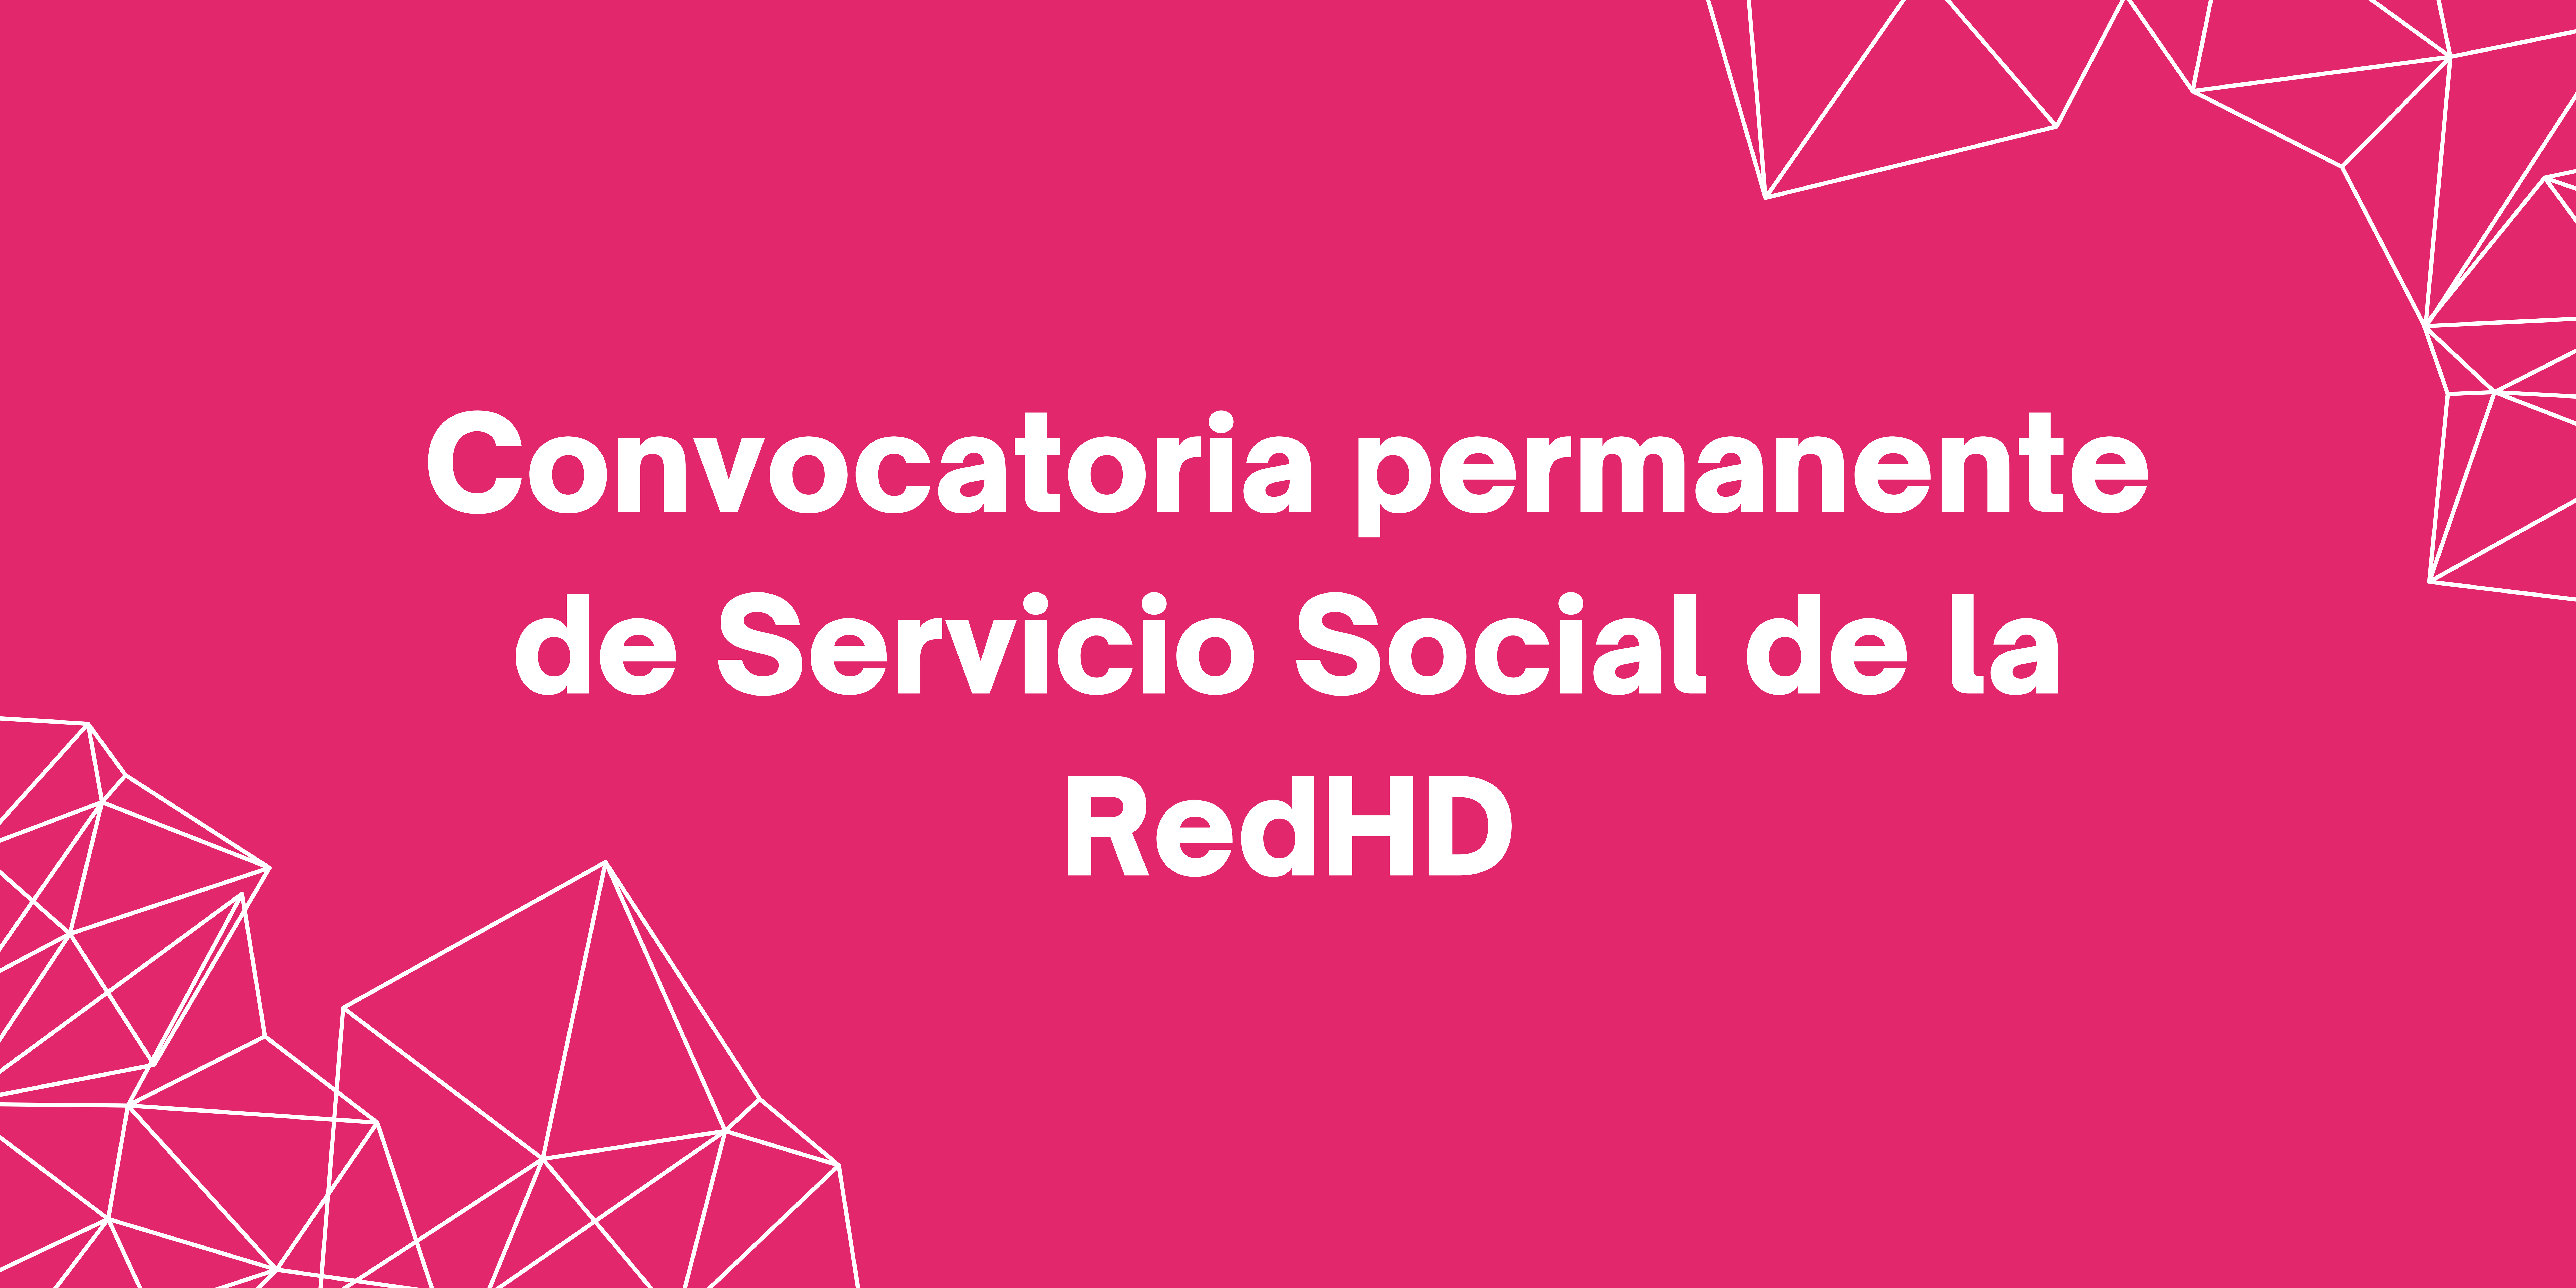 Convocatoria permanente de servicio social de la RedHD en el área editorial y de comunicación